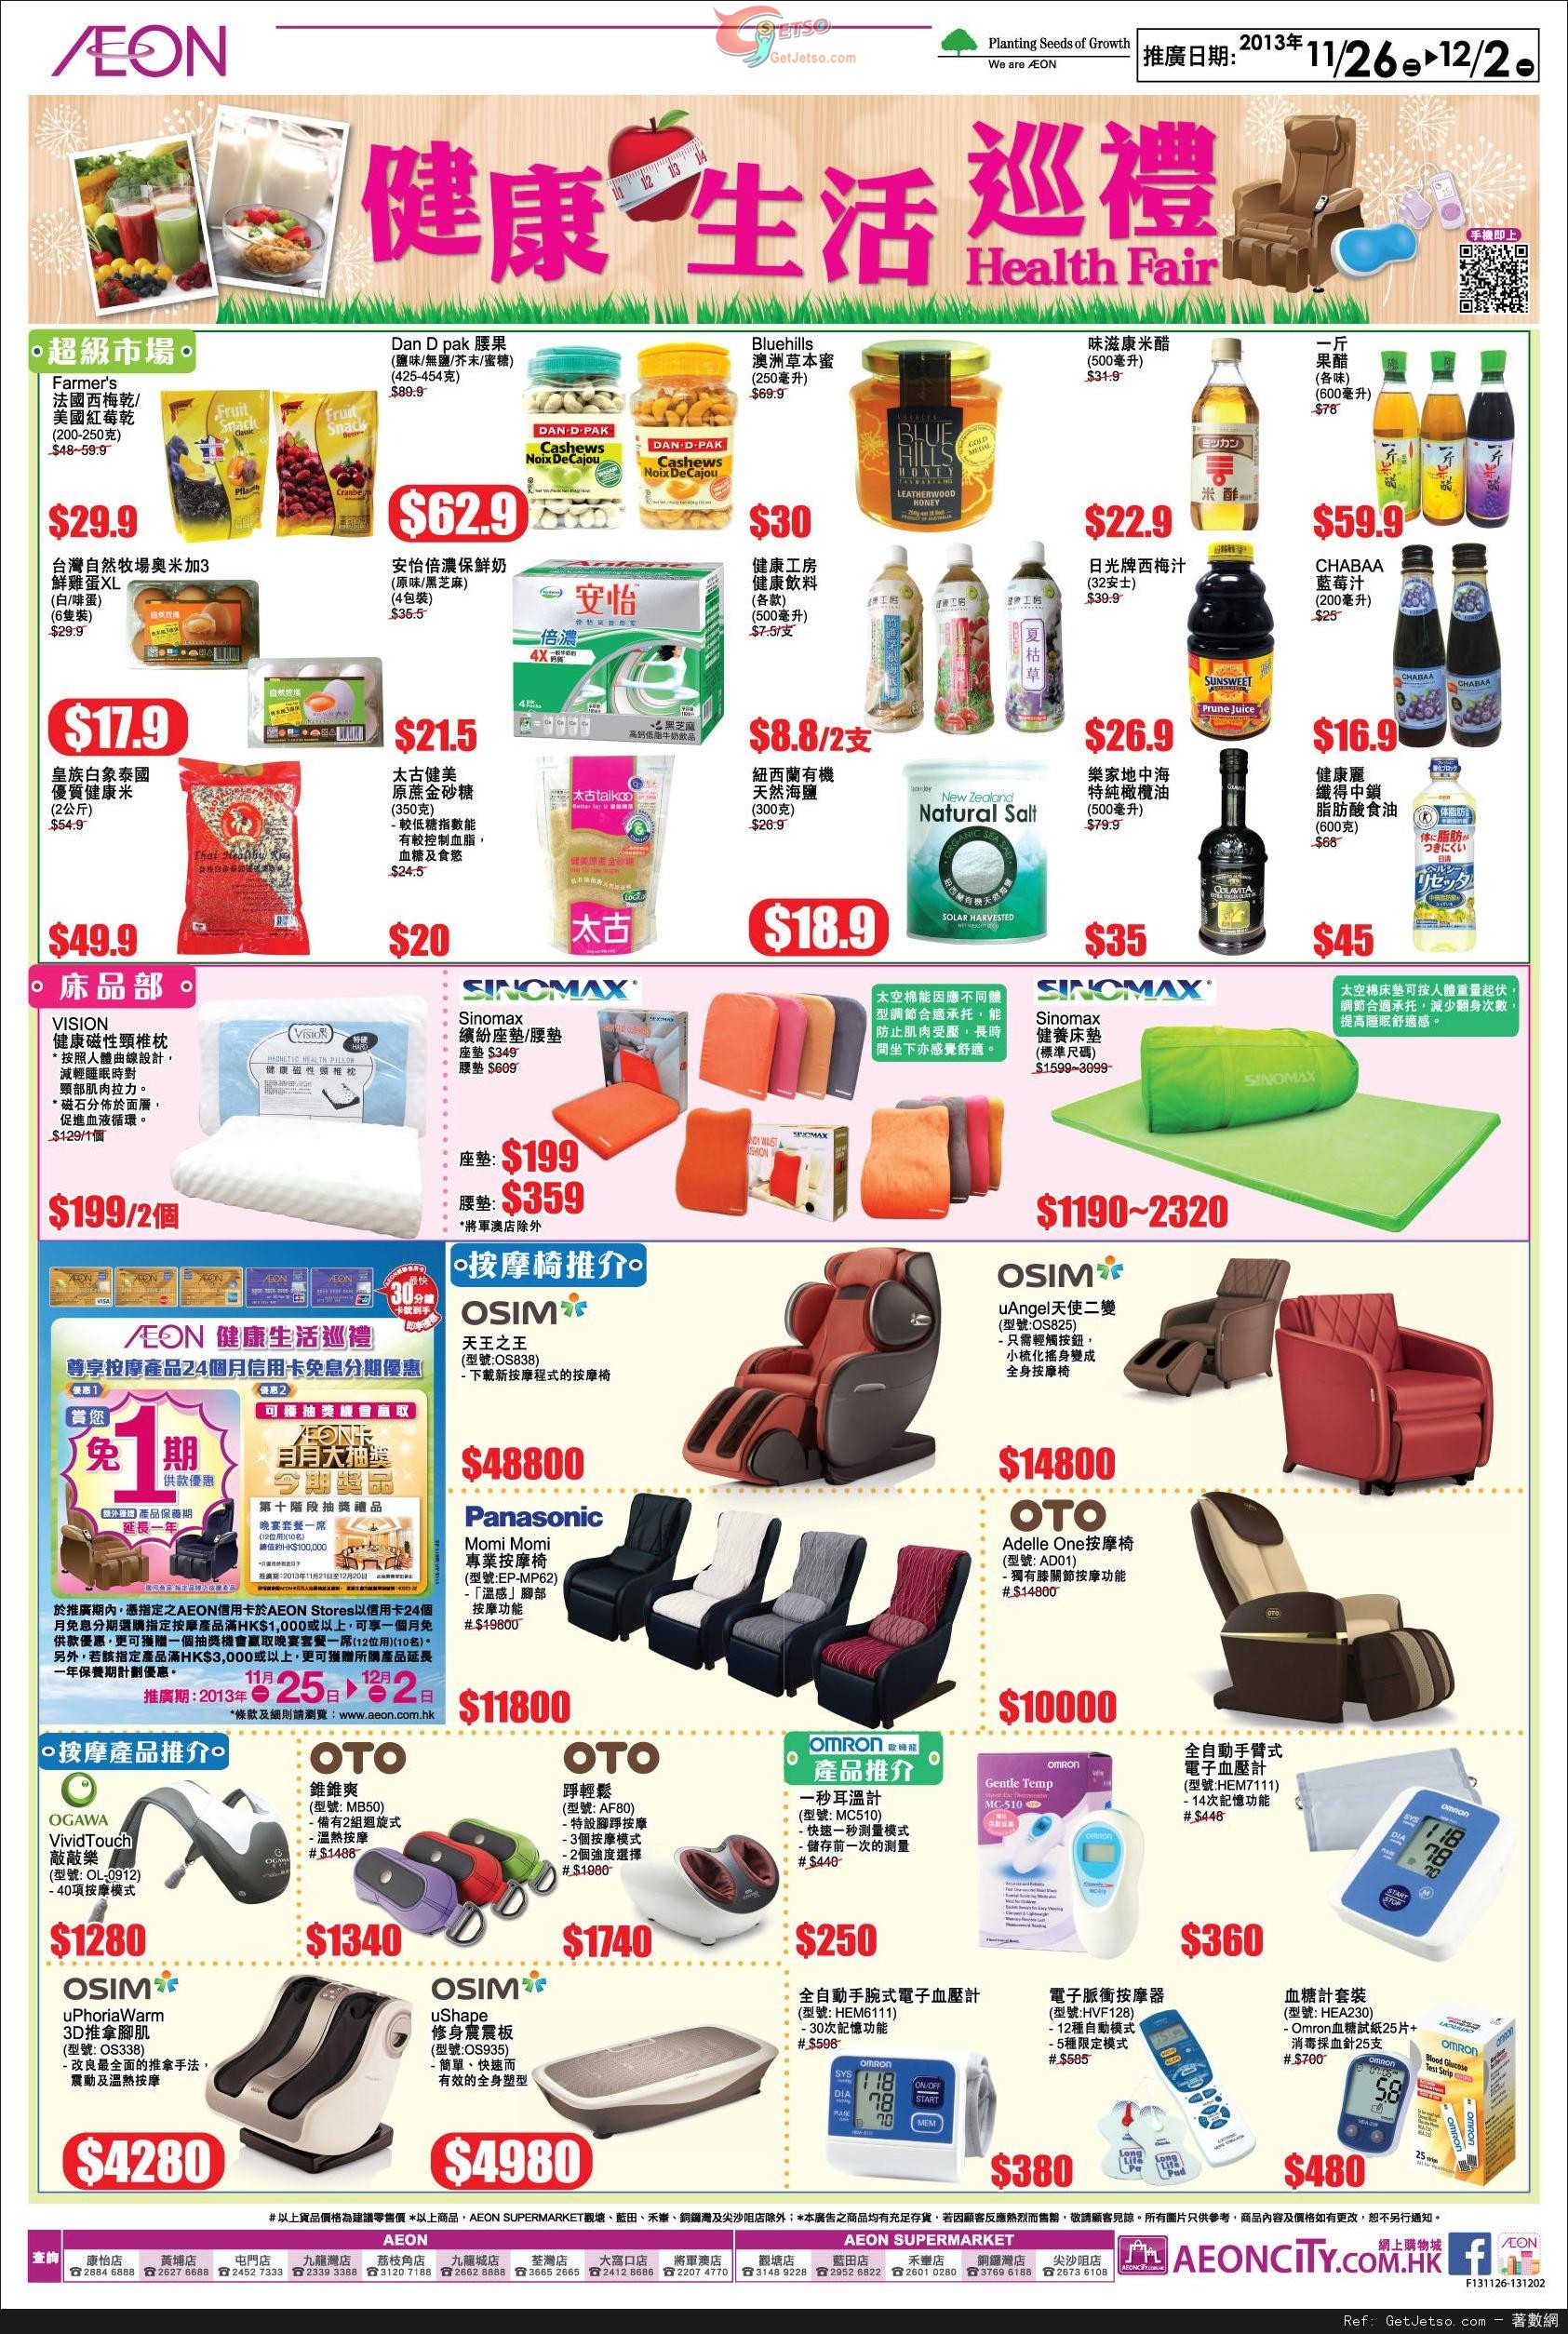 AEON 健康生活巡禮/旅行用品展購物優惠(至13年12月2日)圖片1